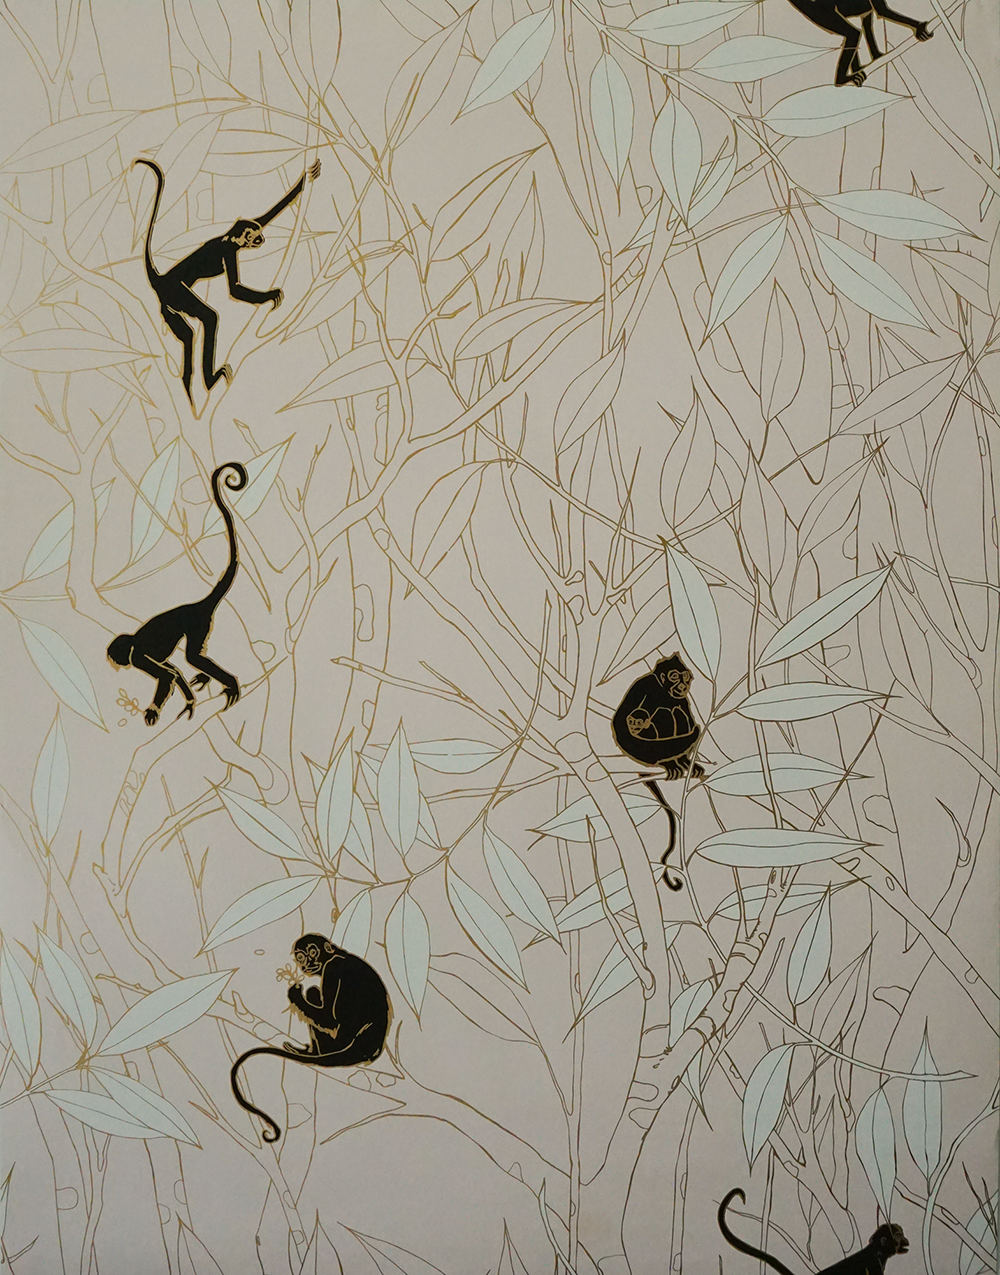 Spider Monkey - Wallpaper - Monkeys at Sunset